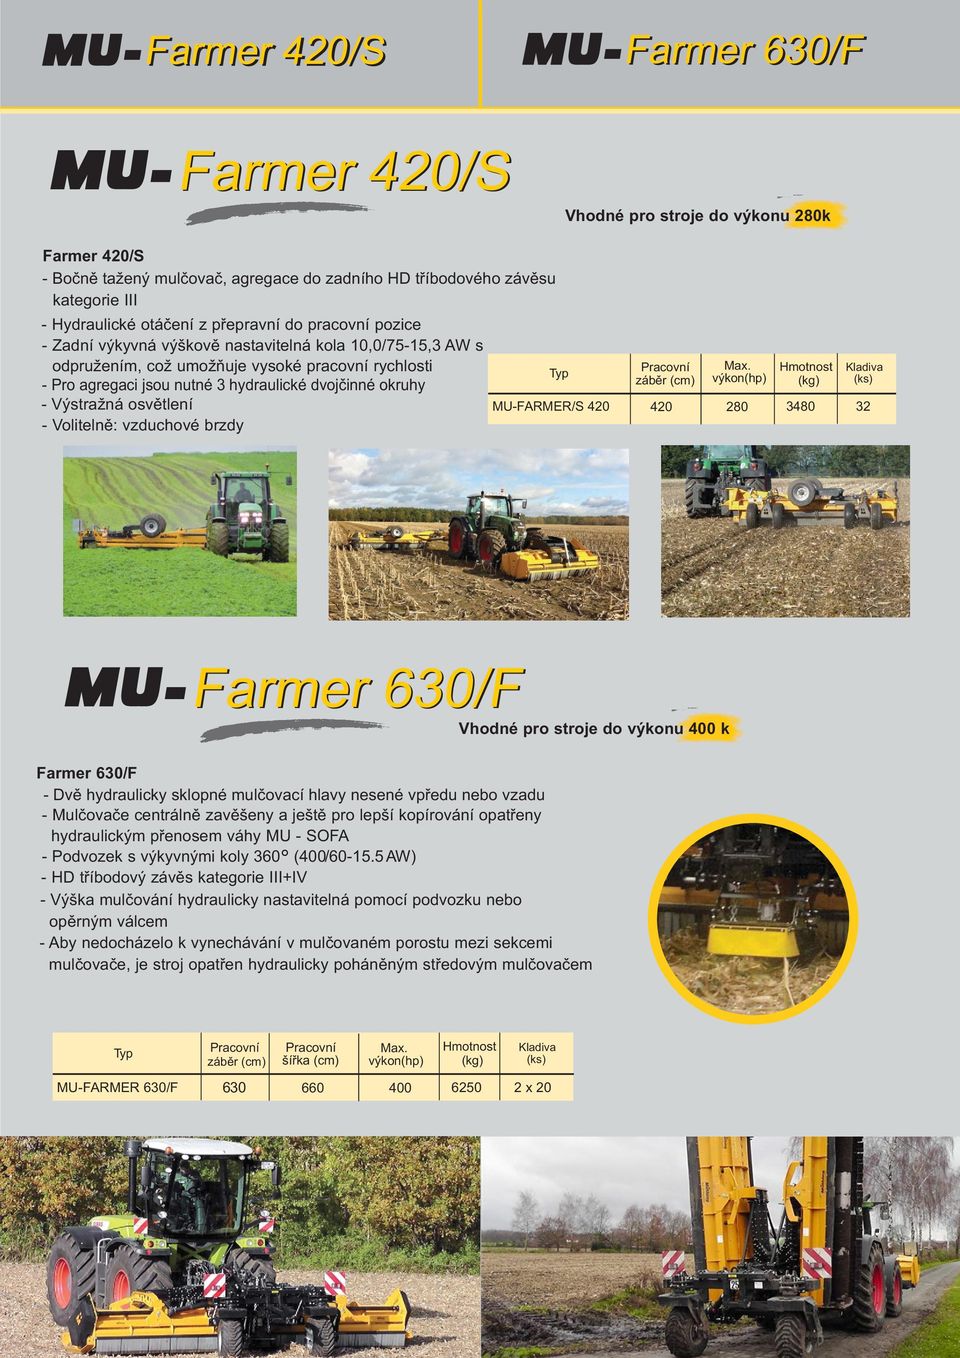 osvětlení MU-FARMER/S 420 - Volitelně: vzduchové brzdy záběr (cm) 420 280 Farmer 630/F Vhodné pro stroje do výkonu 400 k Farmer 630/F - Dvě hydraulicky sklopné mulčovací hlavy nesené vpředu nebo